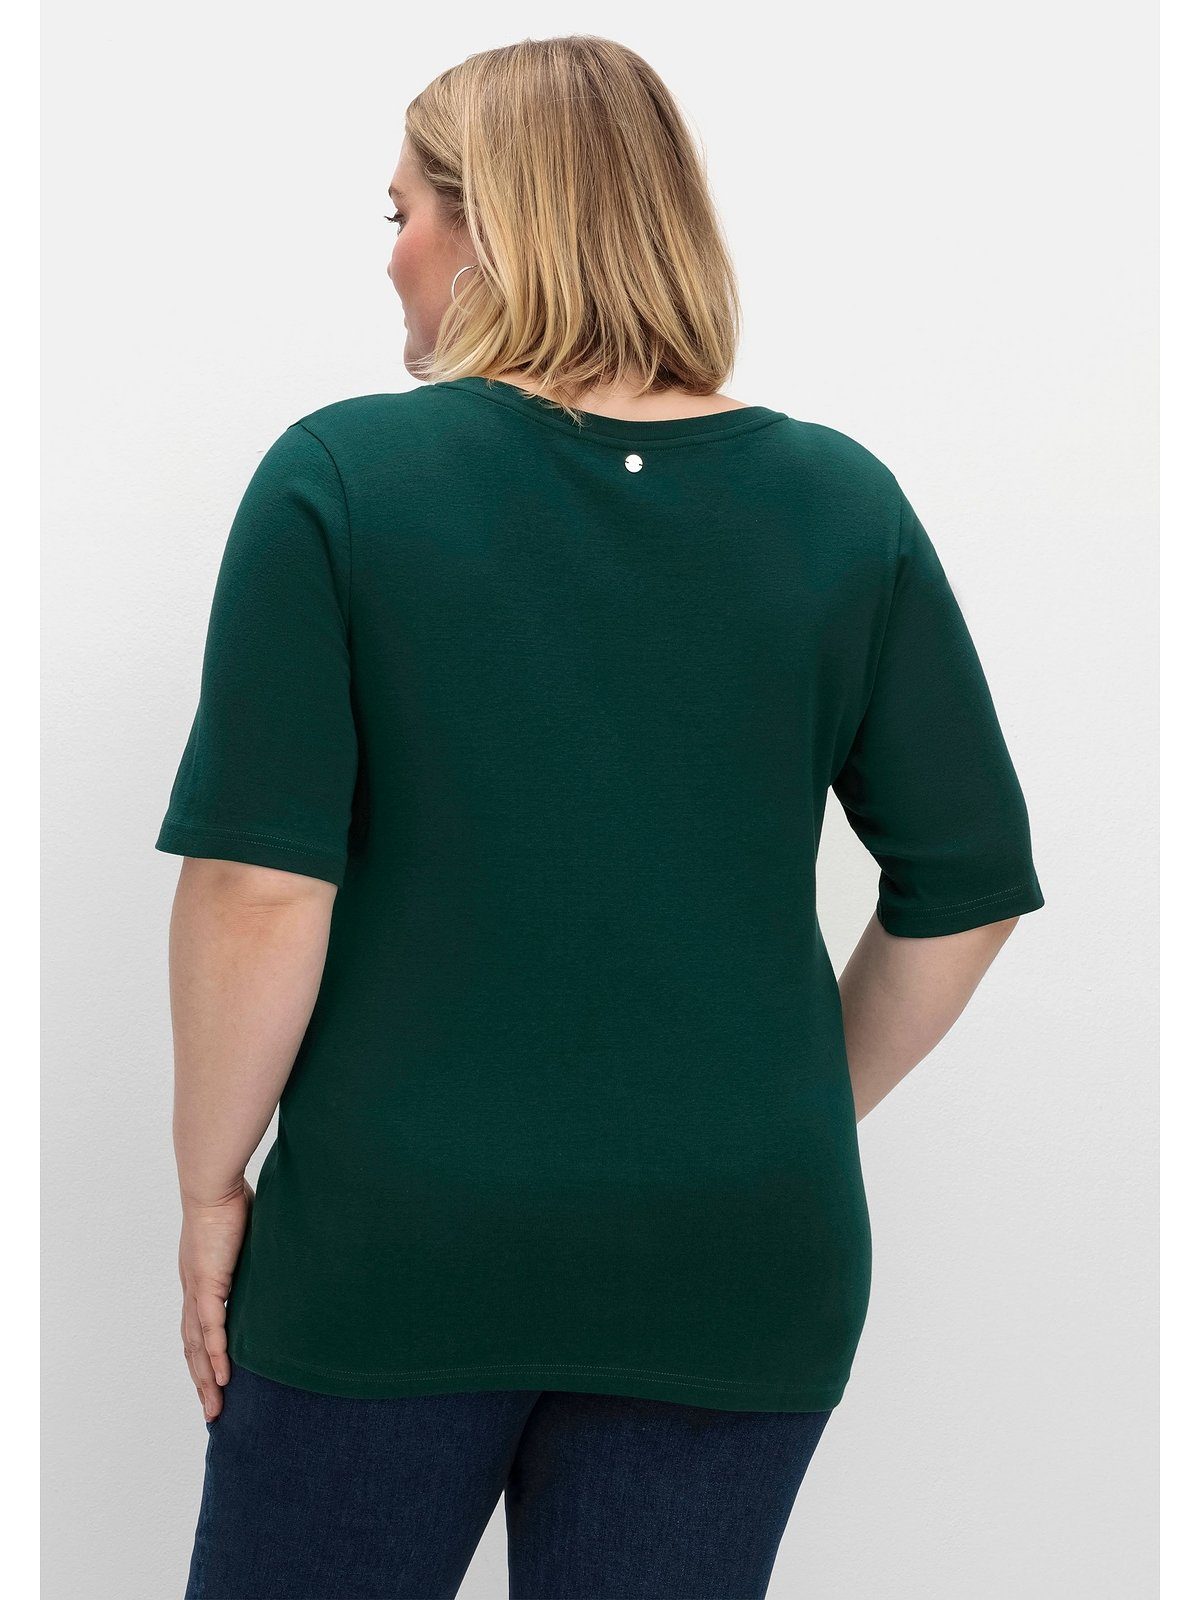 feiner, tiefgrün T-Shirt Größen Große Sheego dehnbarer Rippqualität in